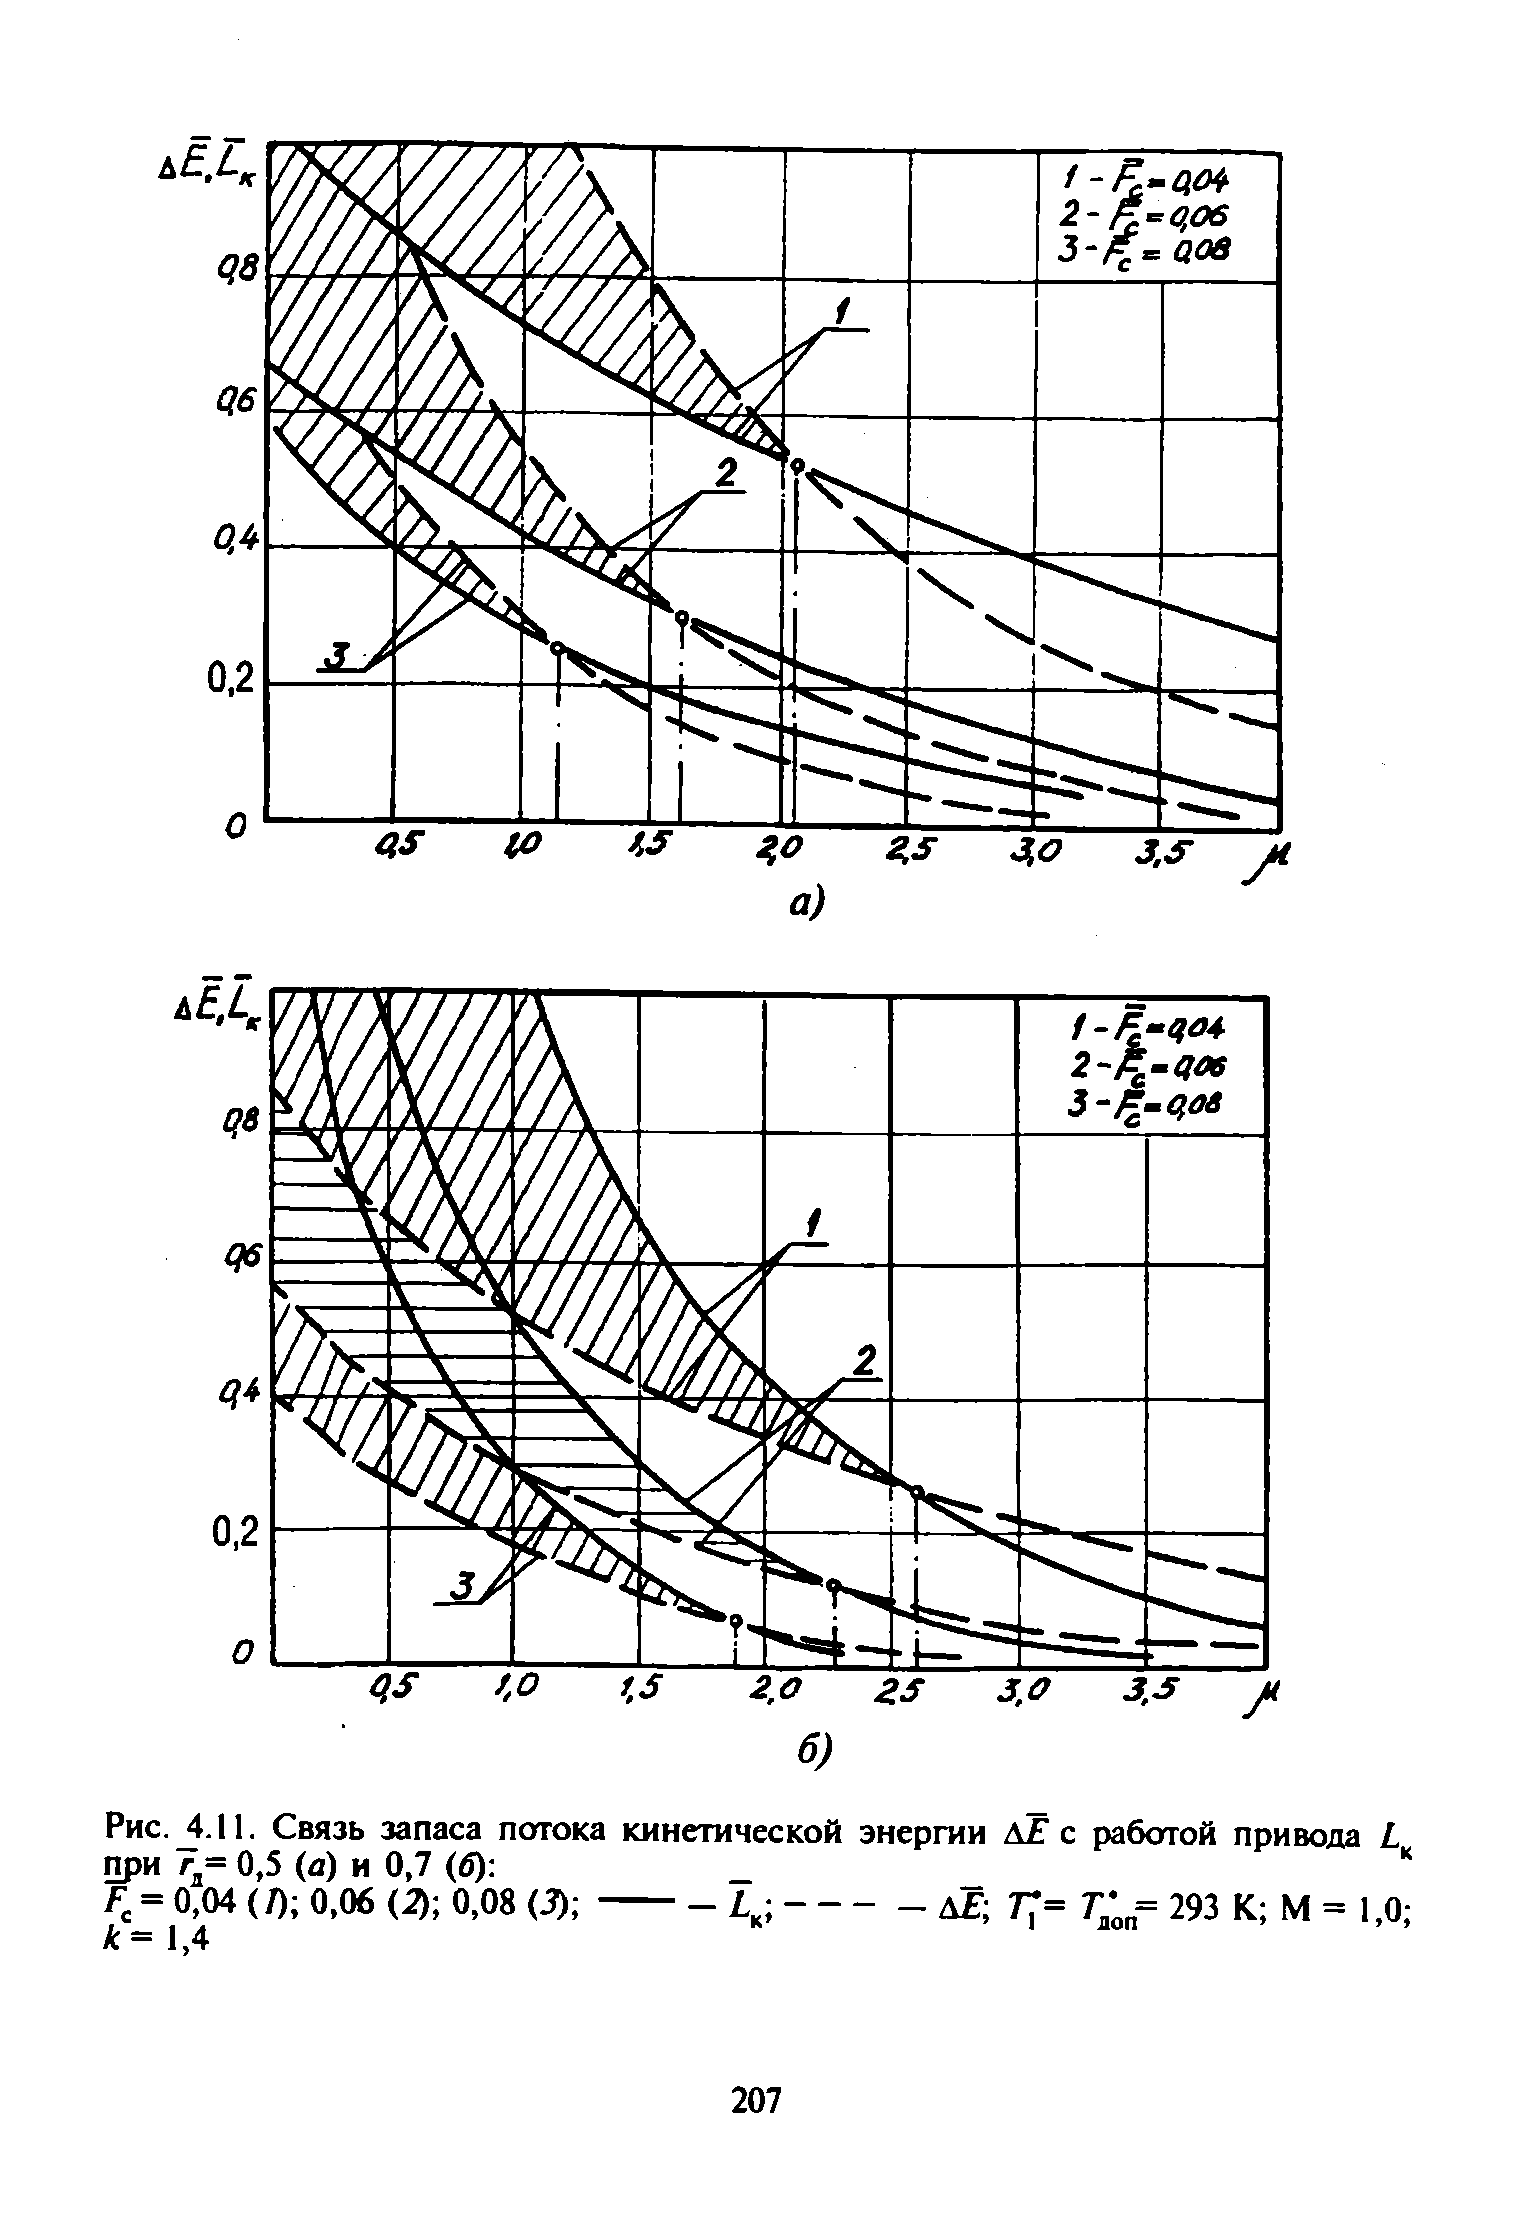 Рис. 4.11. Связь запаса потока кинетической энергии АЕ с работой привода L при 7,= 0,5 (а) и 0.7 (б) 